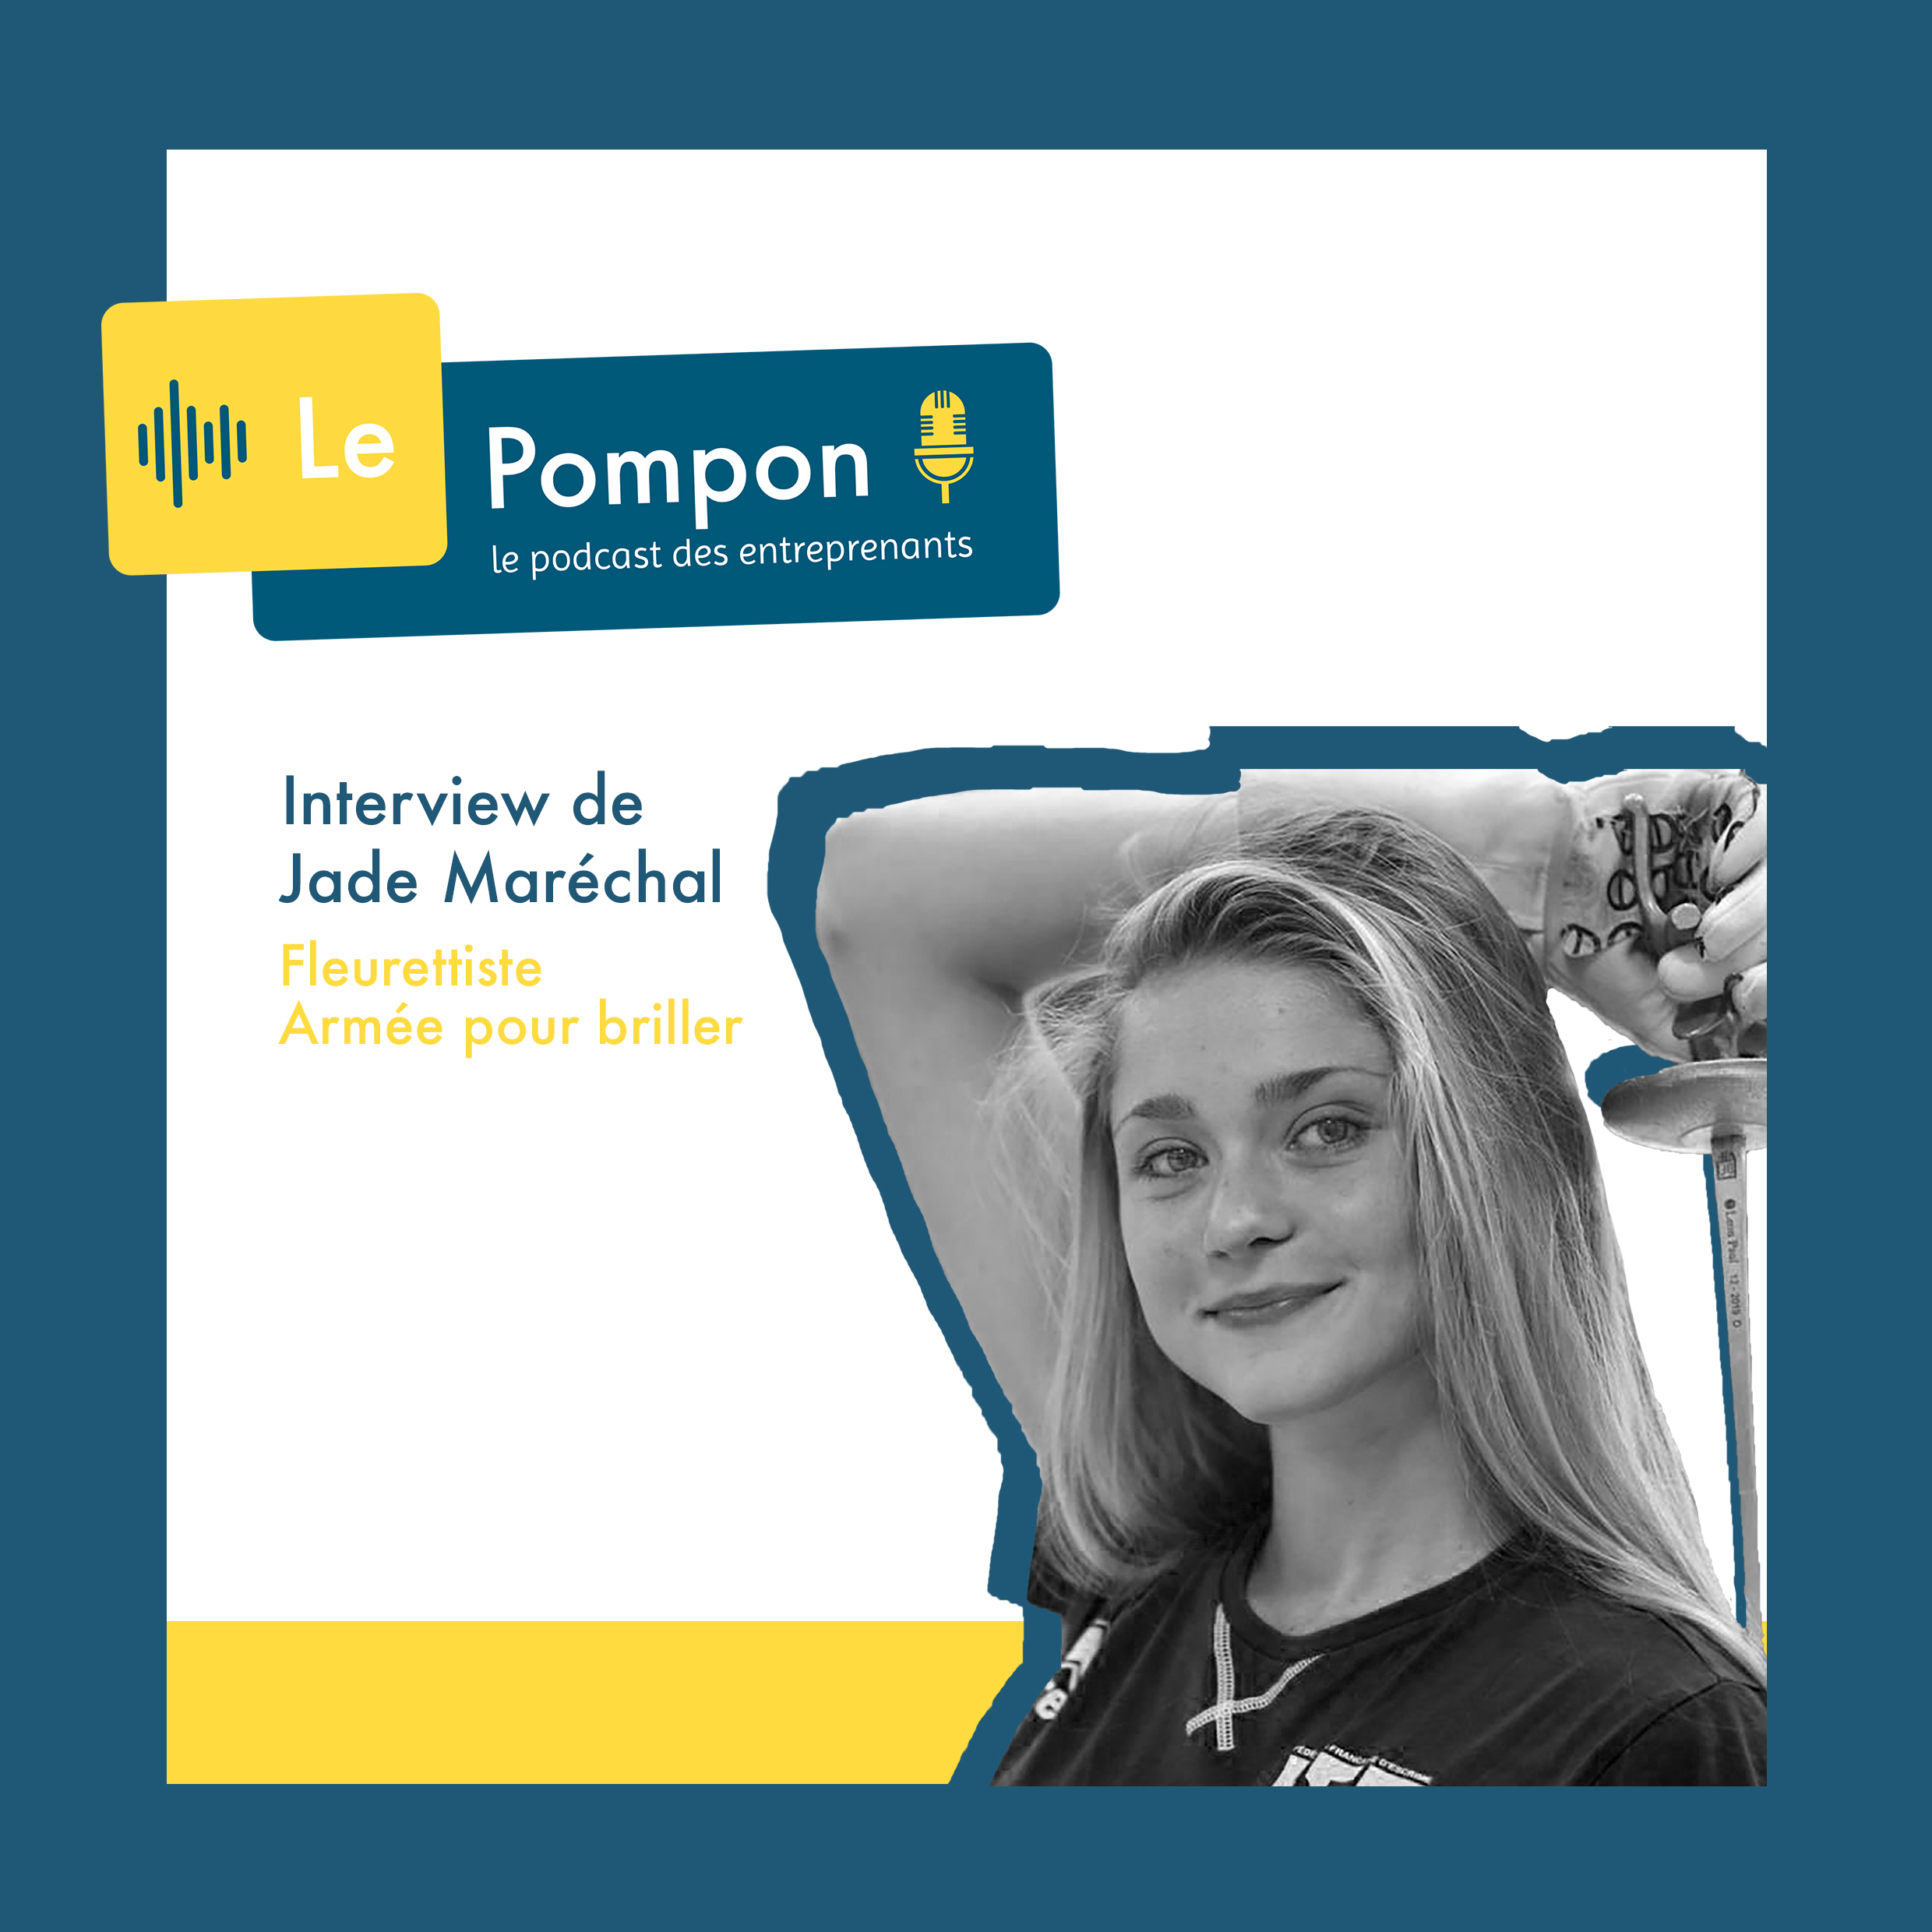 Illustration de l'épisode 35 du Podcast Le Pompon : Jade Maréchal, Fleurettiste